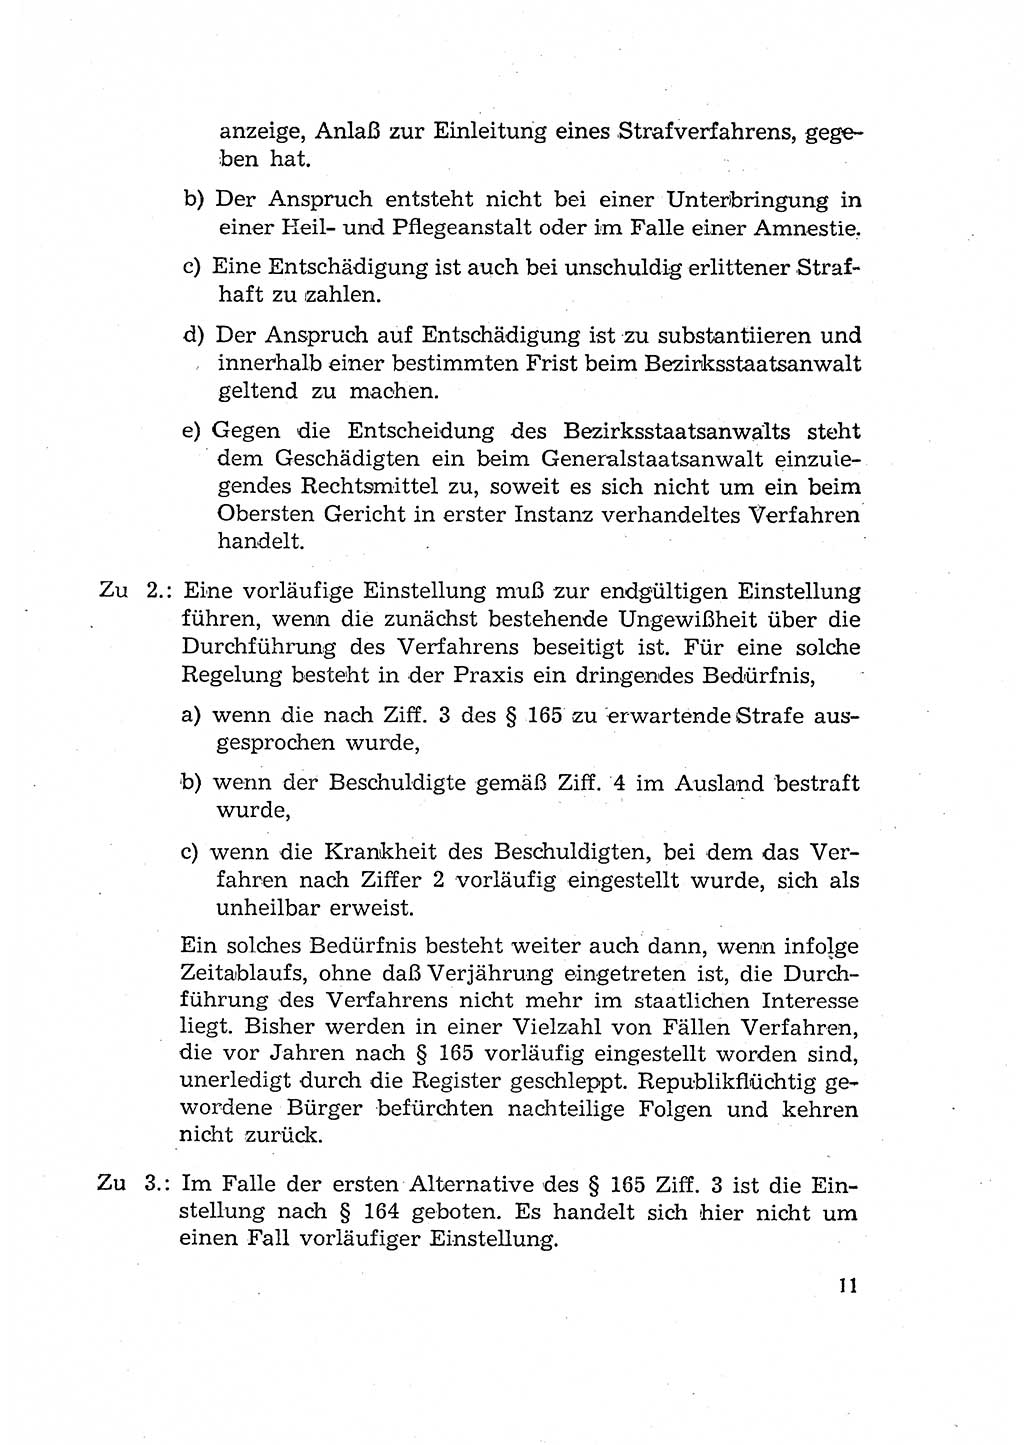 Bericht der Kommission zur Überprüfung der Anwendung der StPO (Strafprozeßordnung) [Deutsche Demokratische Republik (DDR)] 1956, Seite 11 (Ber. StPO DDR 1956, S. 11)